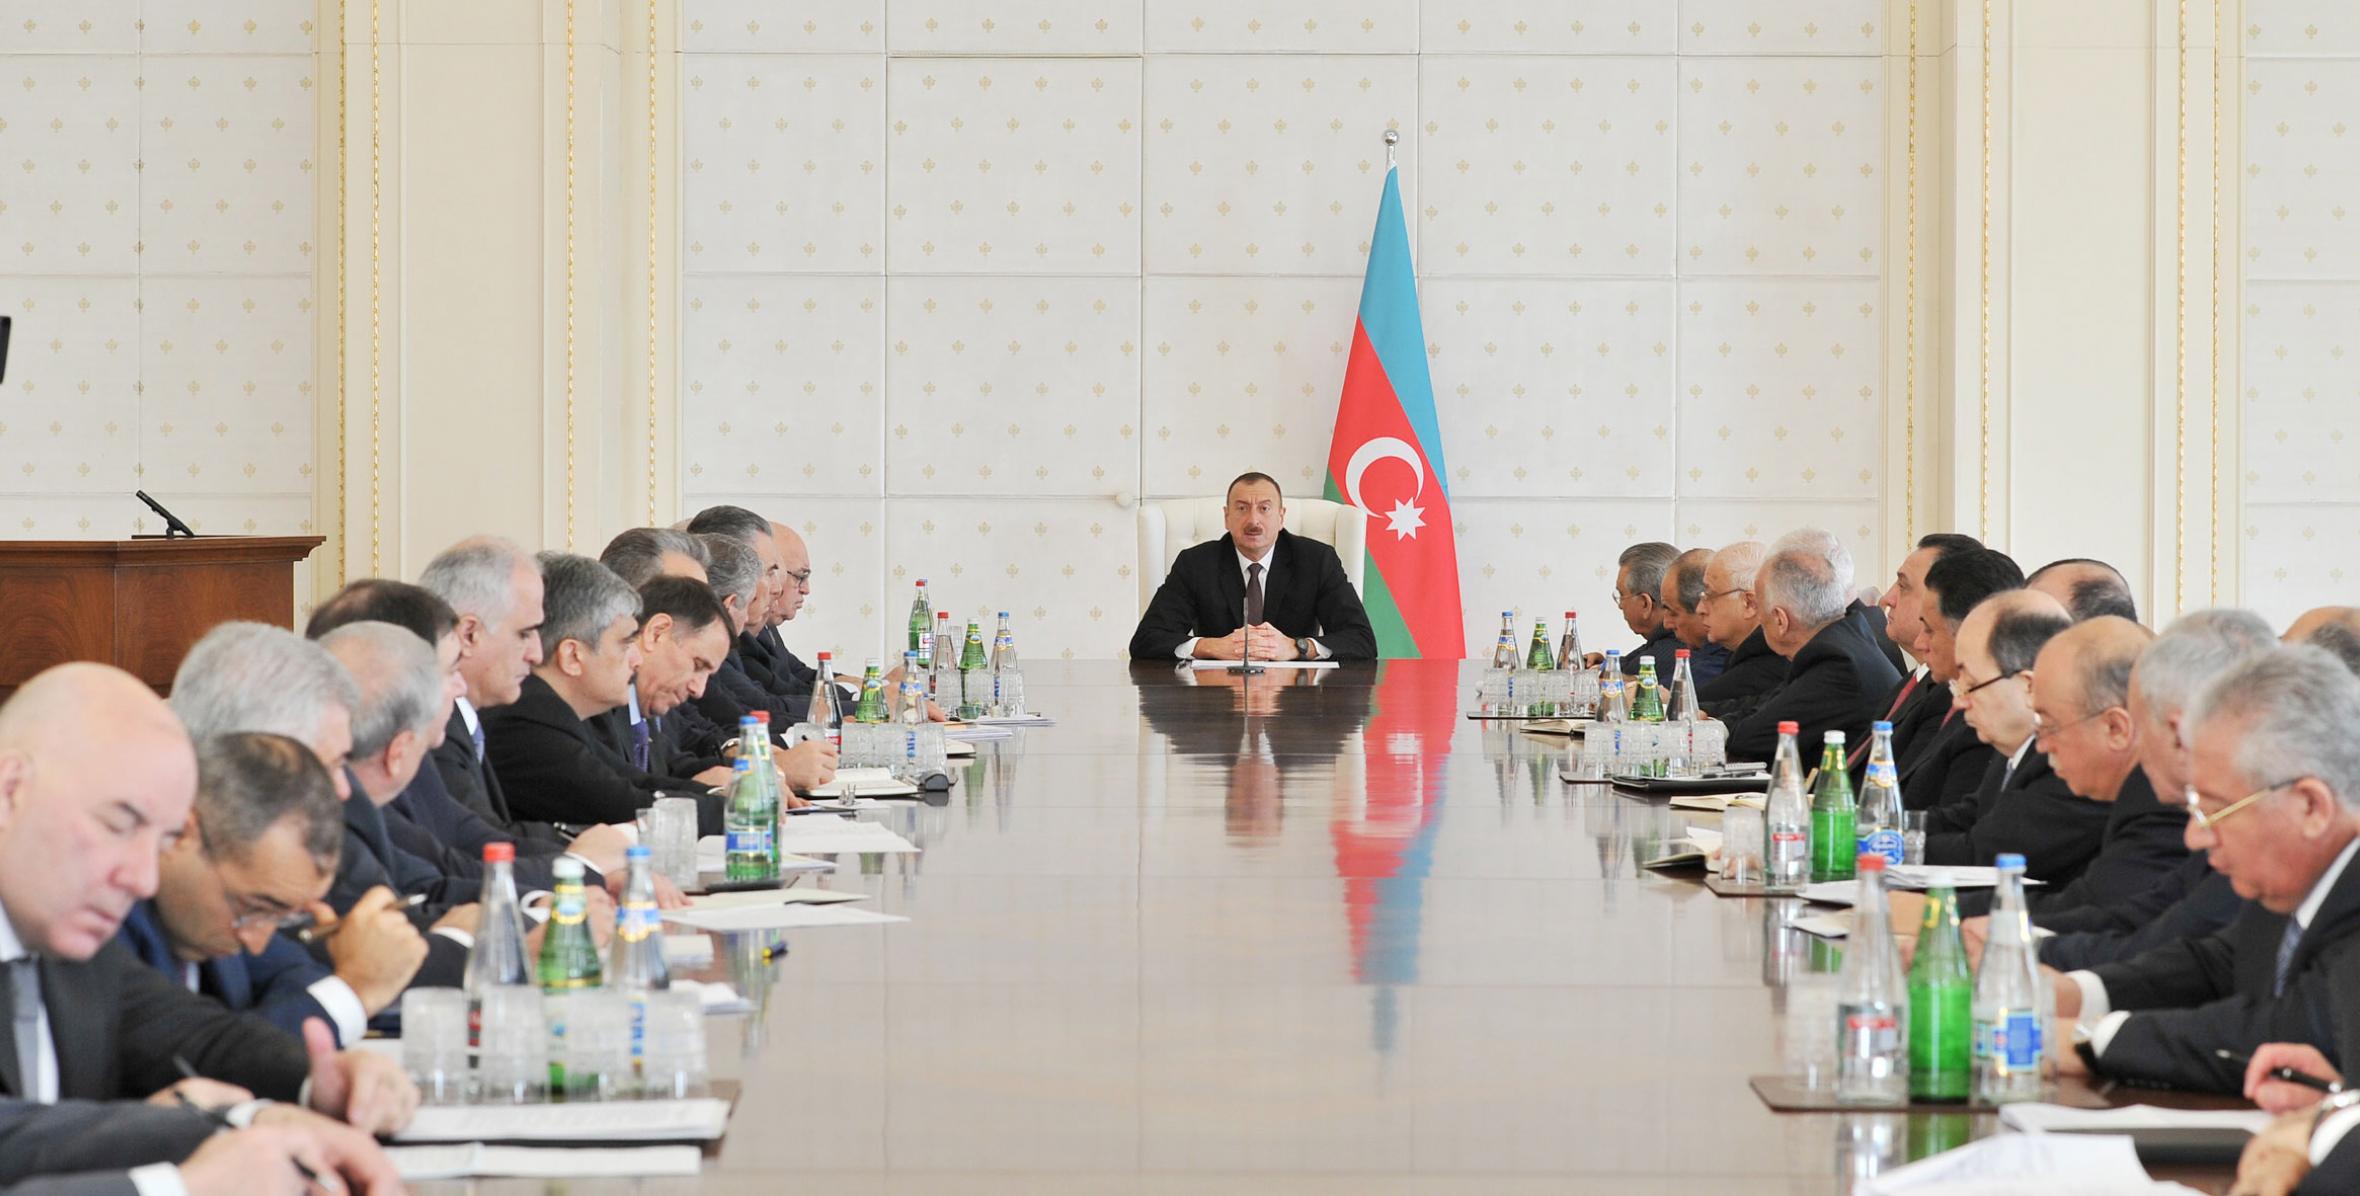 Заключительная речь Ильхама Алиева на заседании Кабинета Министров, посвященном итогам социально-экономического развития в первом квартале 2014 года и предстоящим задачам